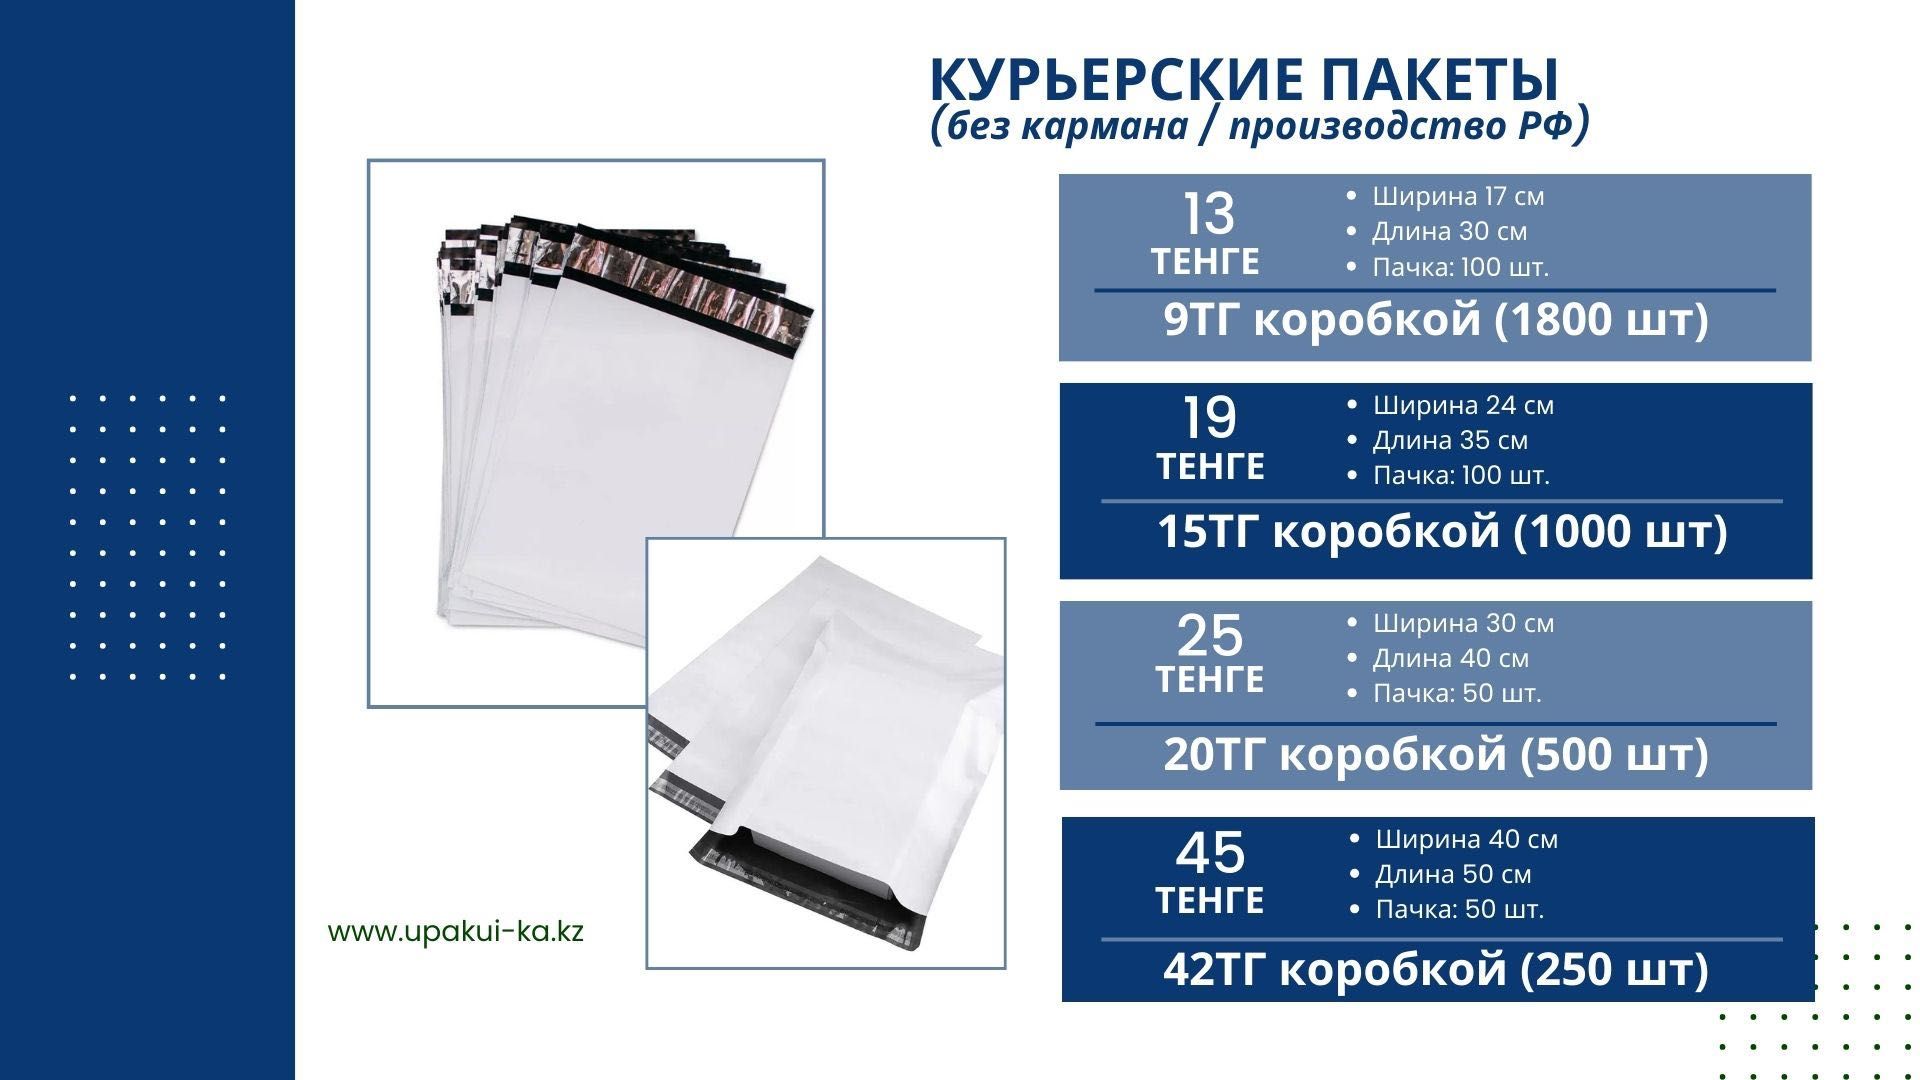 Курьер пакет с карманом для KASPI WB OZON 9тг от производителя!